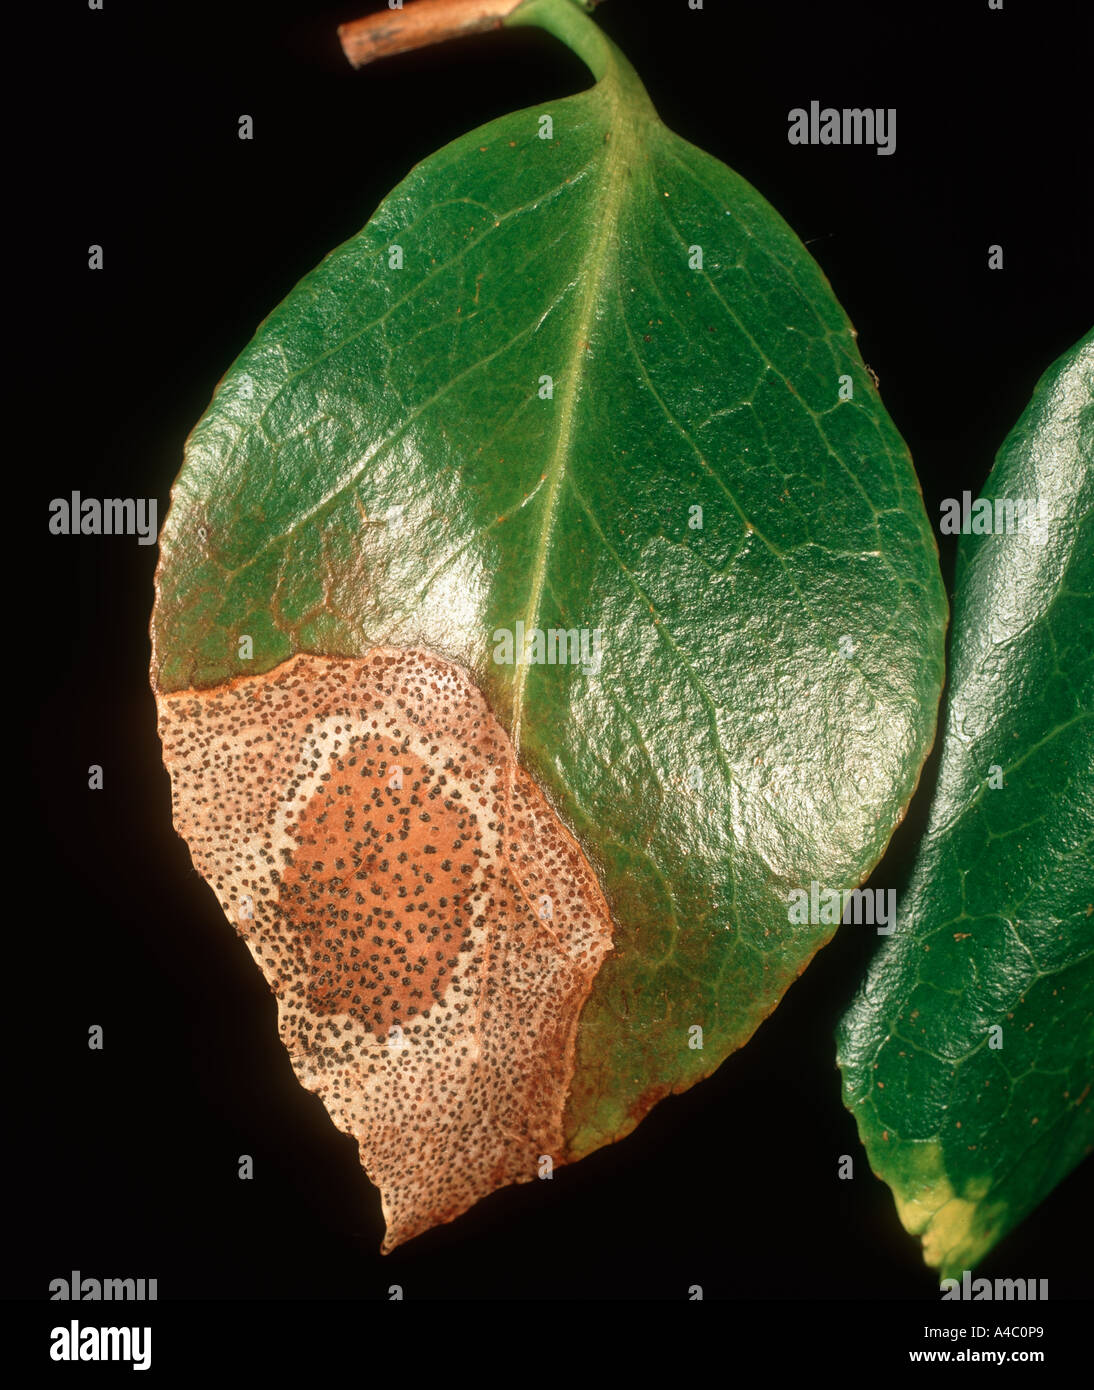 Camellia leaf spot Pestalotiopsis guepini on Camellia leaf Stock Photo